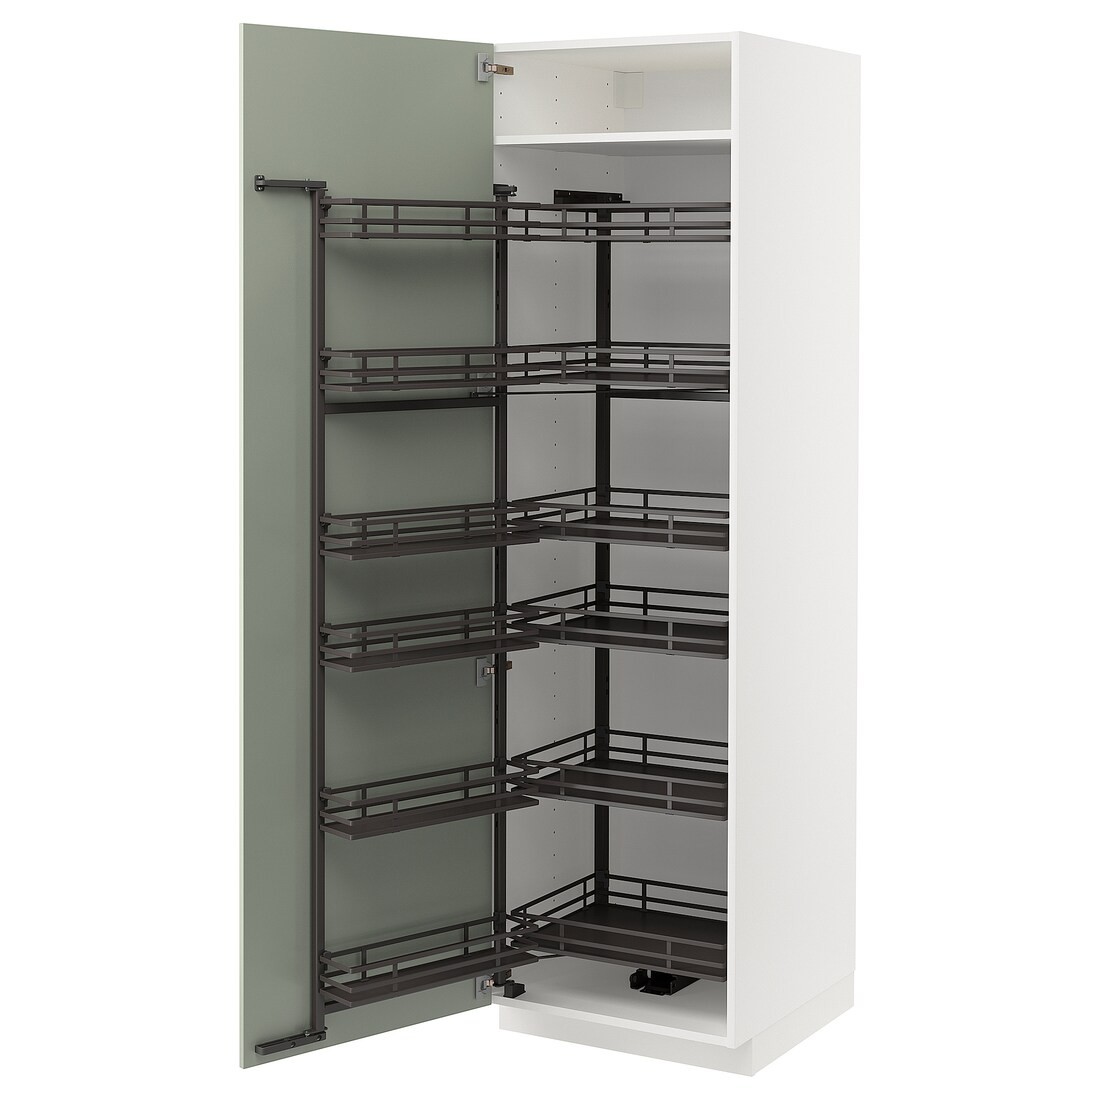 METOD МЕТОД Высокий шкаф с выдвижной кладовой, белый / Stensund светло-зеленый, 60x60x200 см